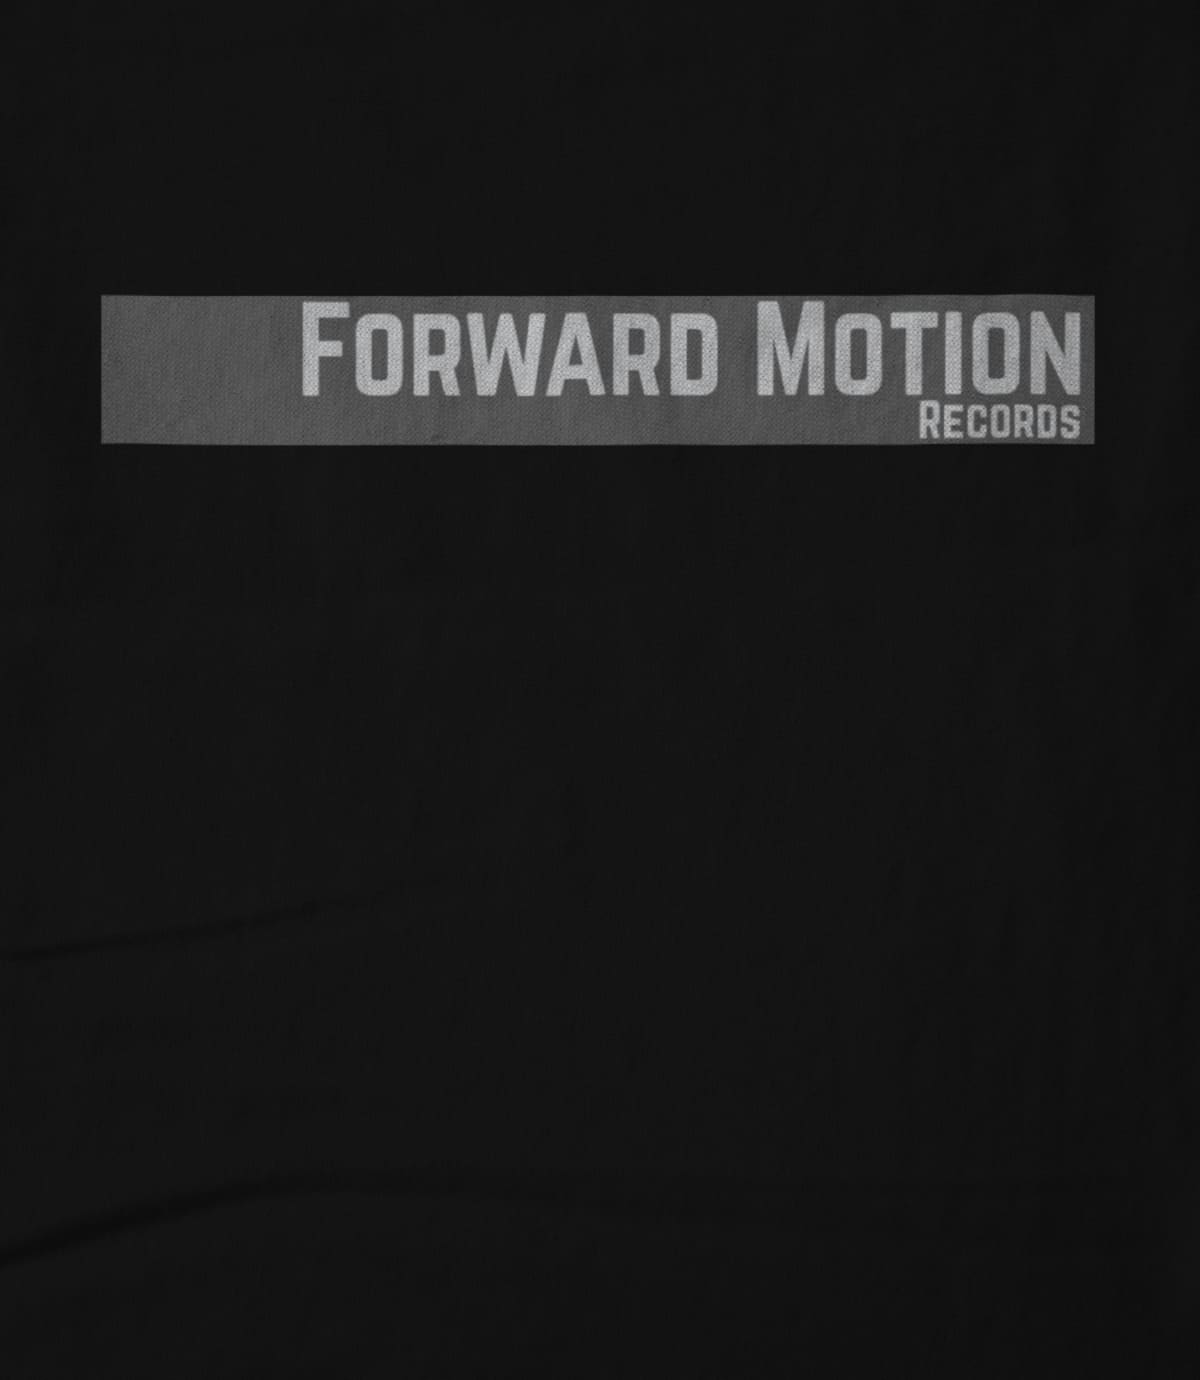 (Parollo Music) Forward Motion Records